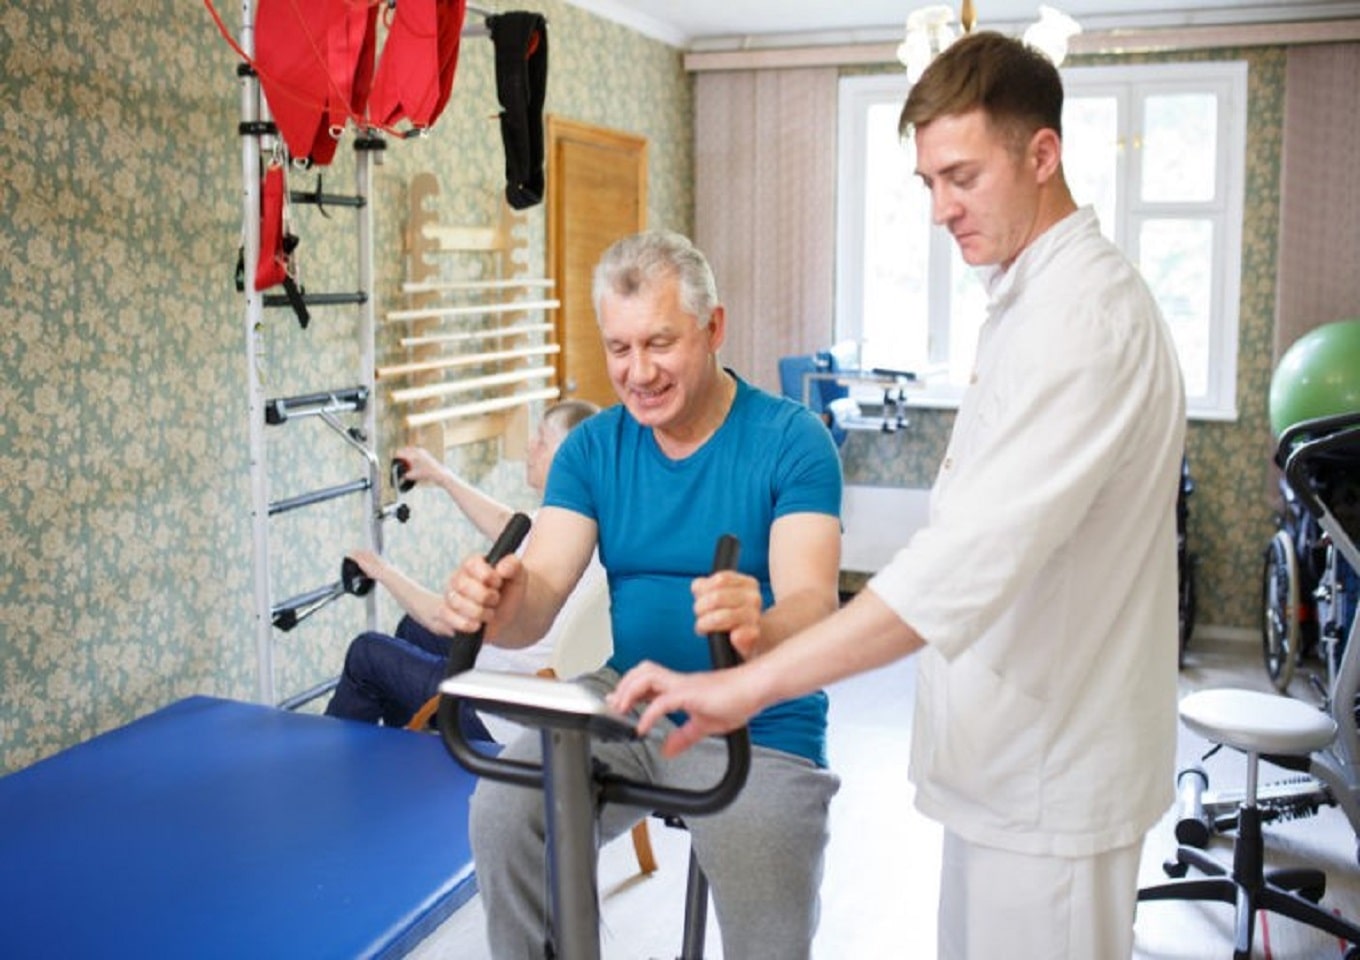 Реабилитация пожилых после инсульта в пансионате является эффективным и целостным подходом